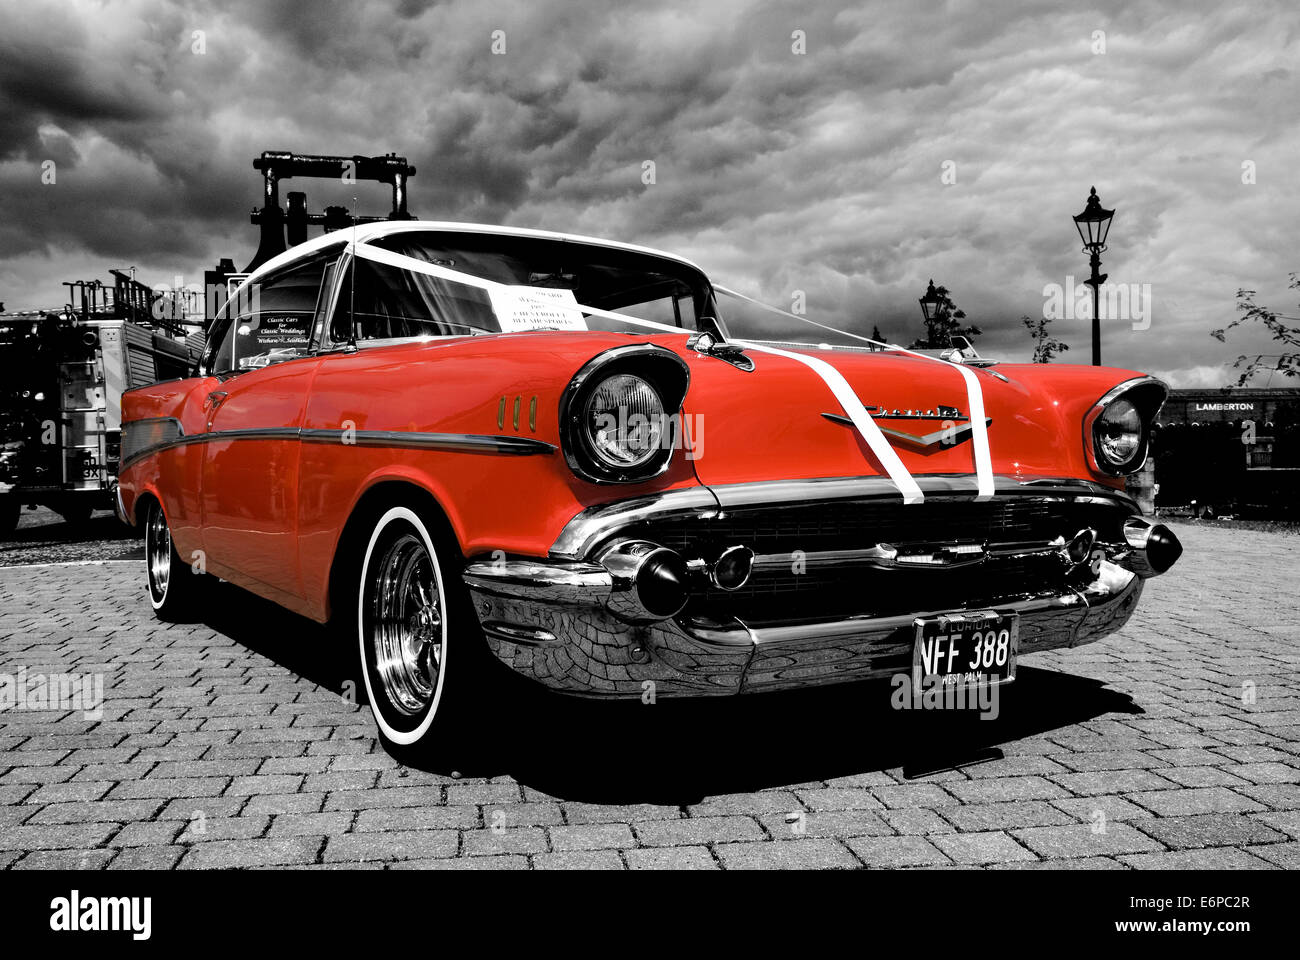 Vintage American Chevrolet Car on display at Summerlee Museum Coatbridge. Stock Photo